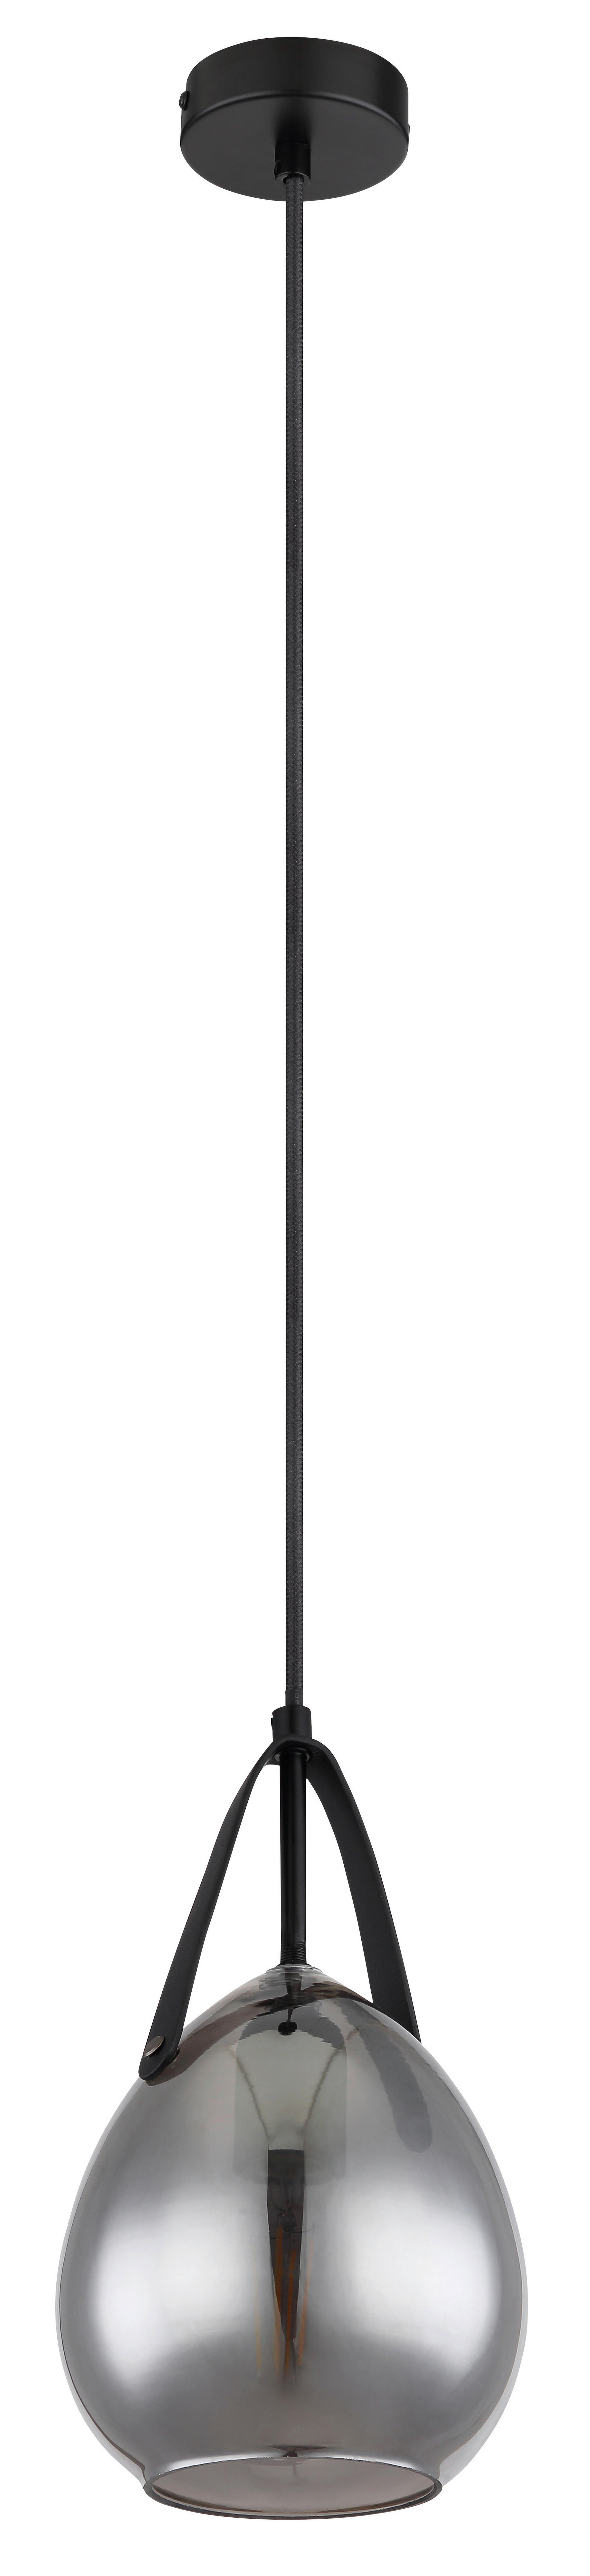 HÄNGELEUCHTE 15/120 cm   - Schwarz, Design, Glas/Metall (15/120cm) - Globo